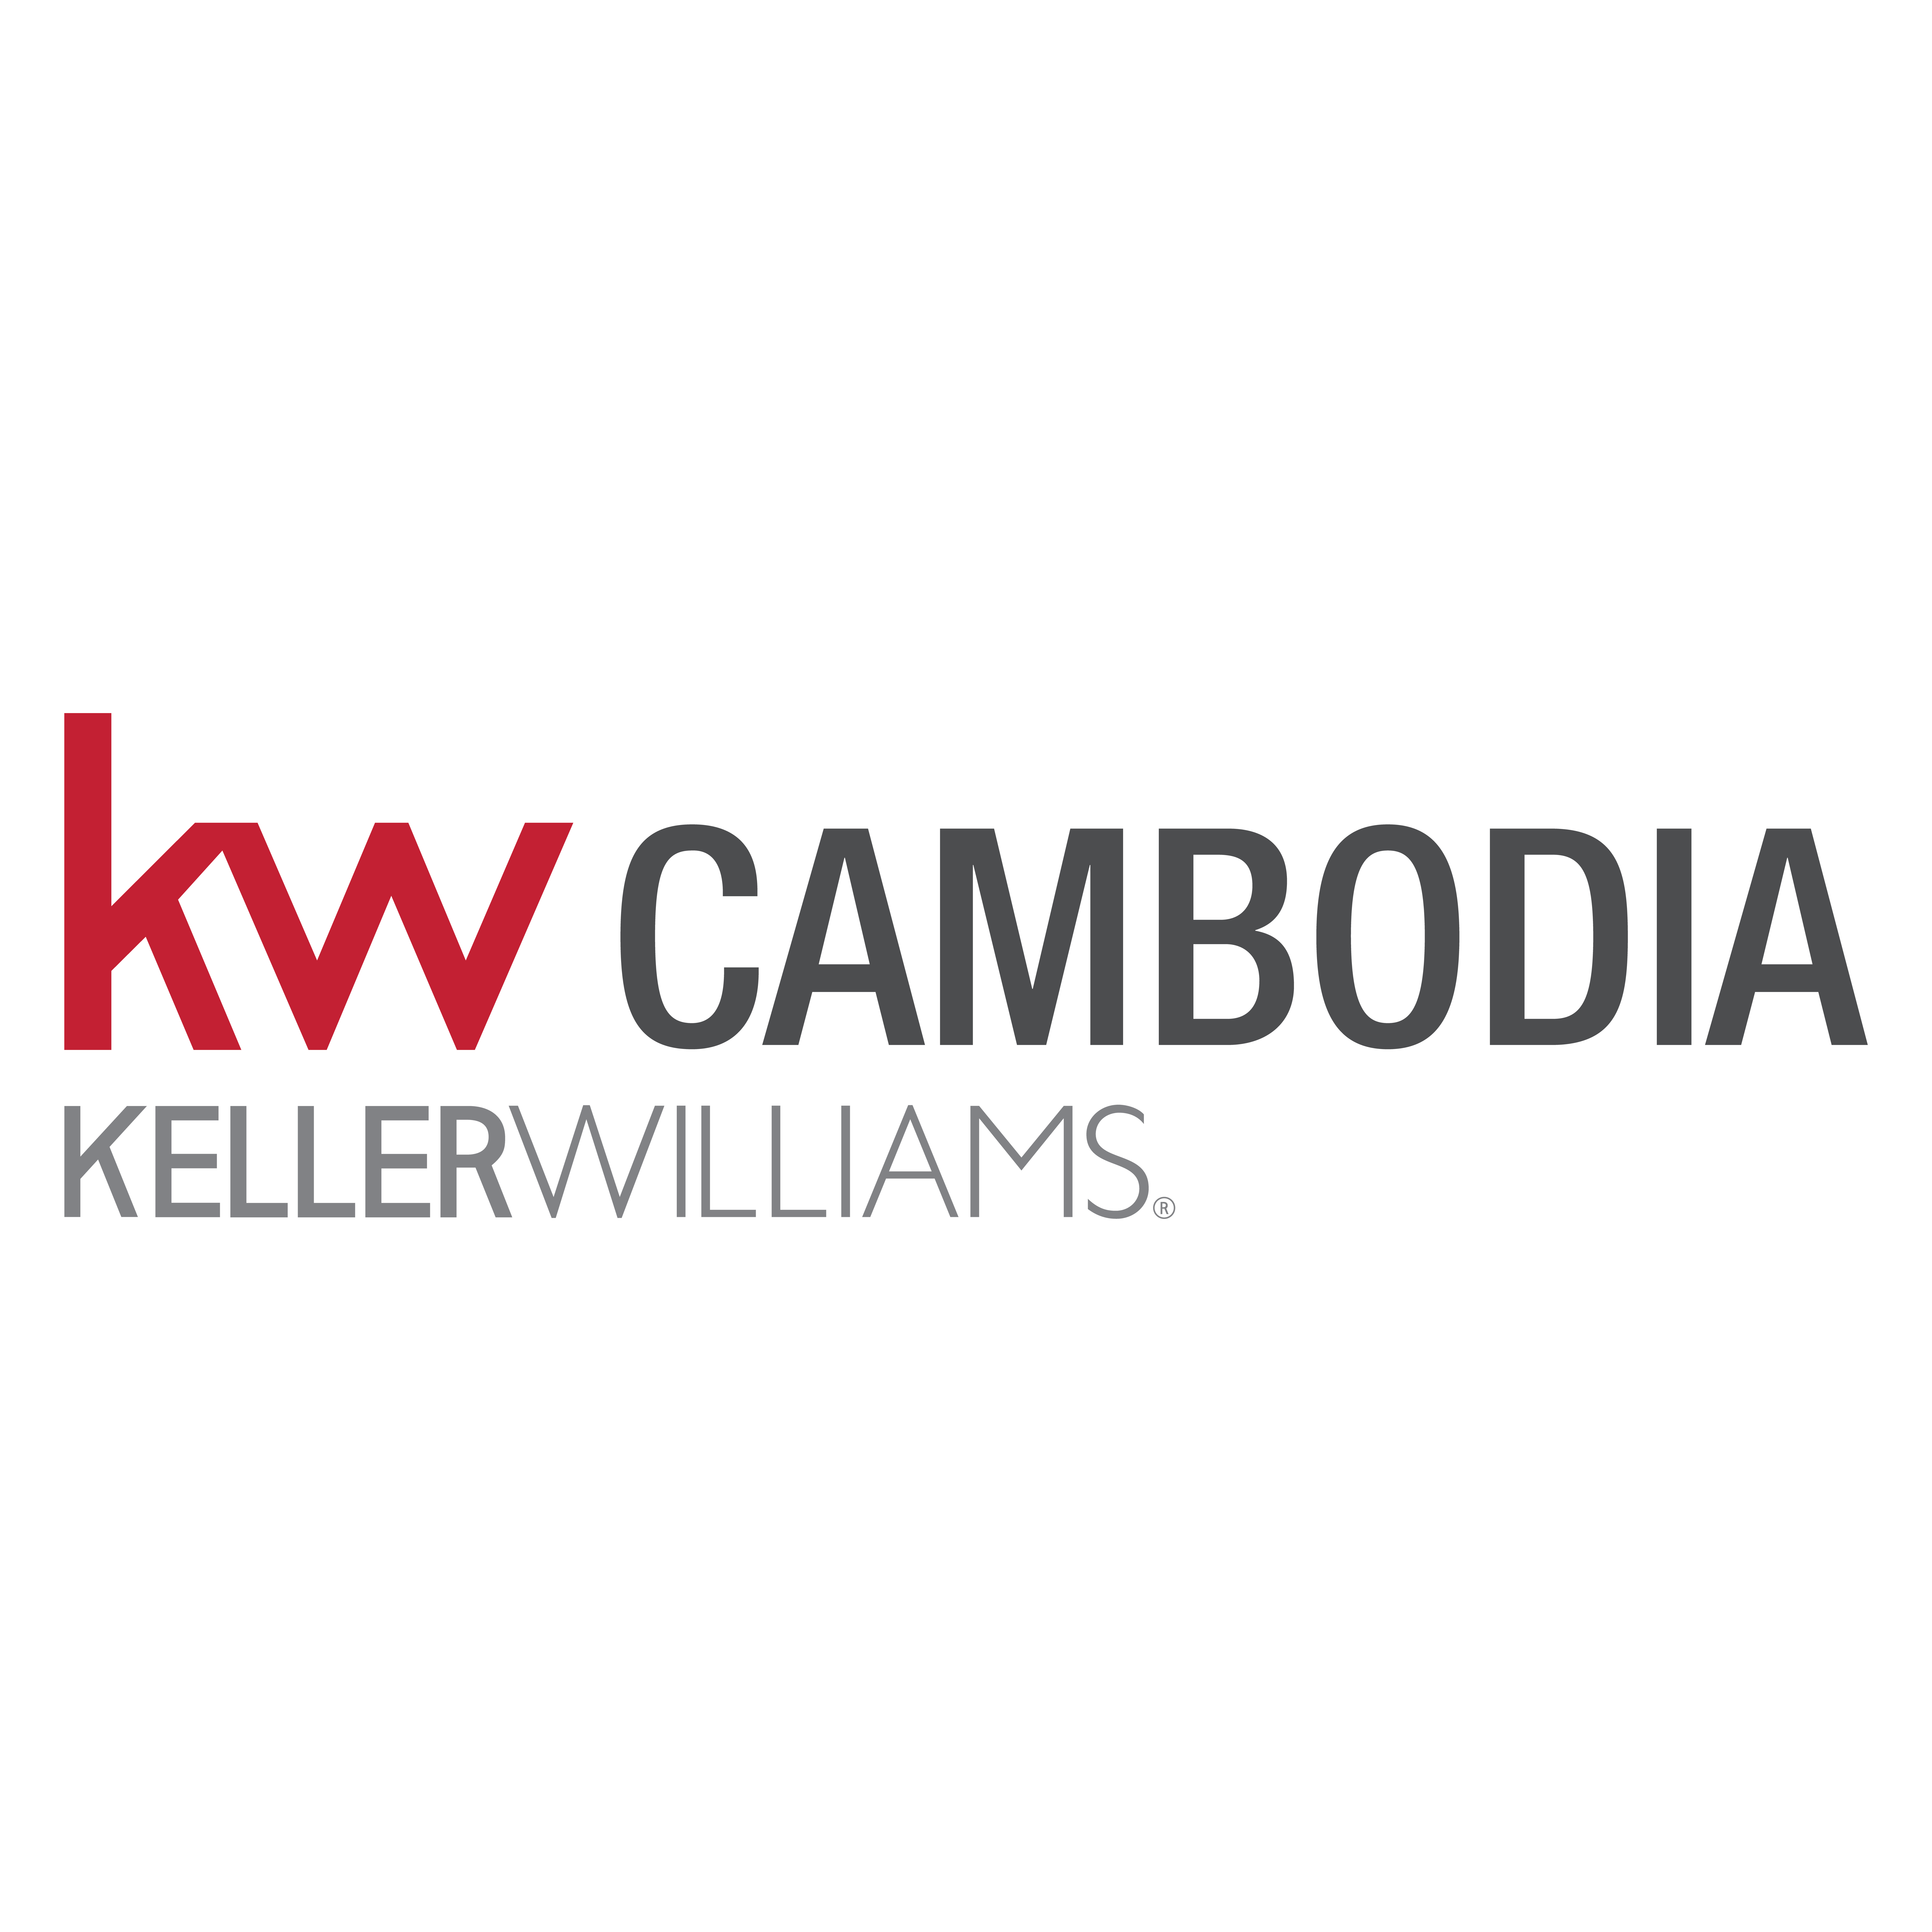 KW CAMBODIA